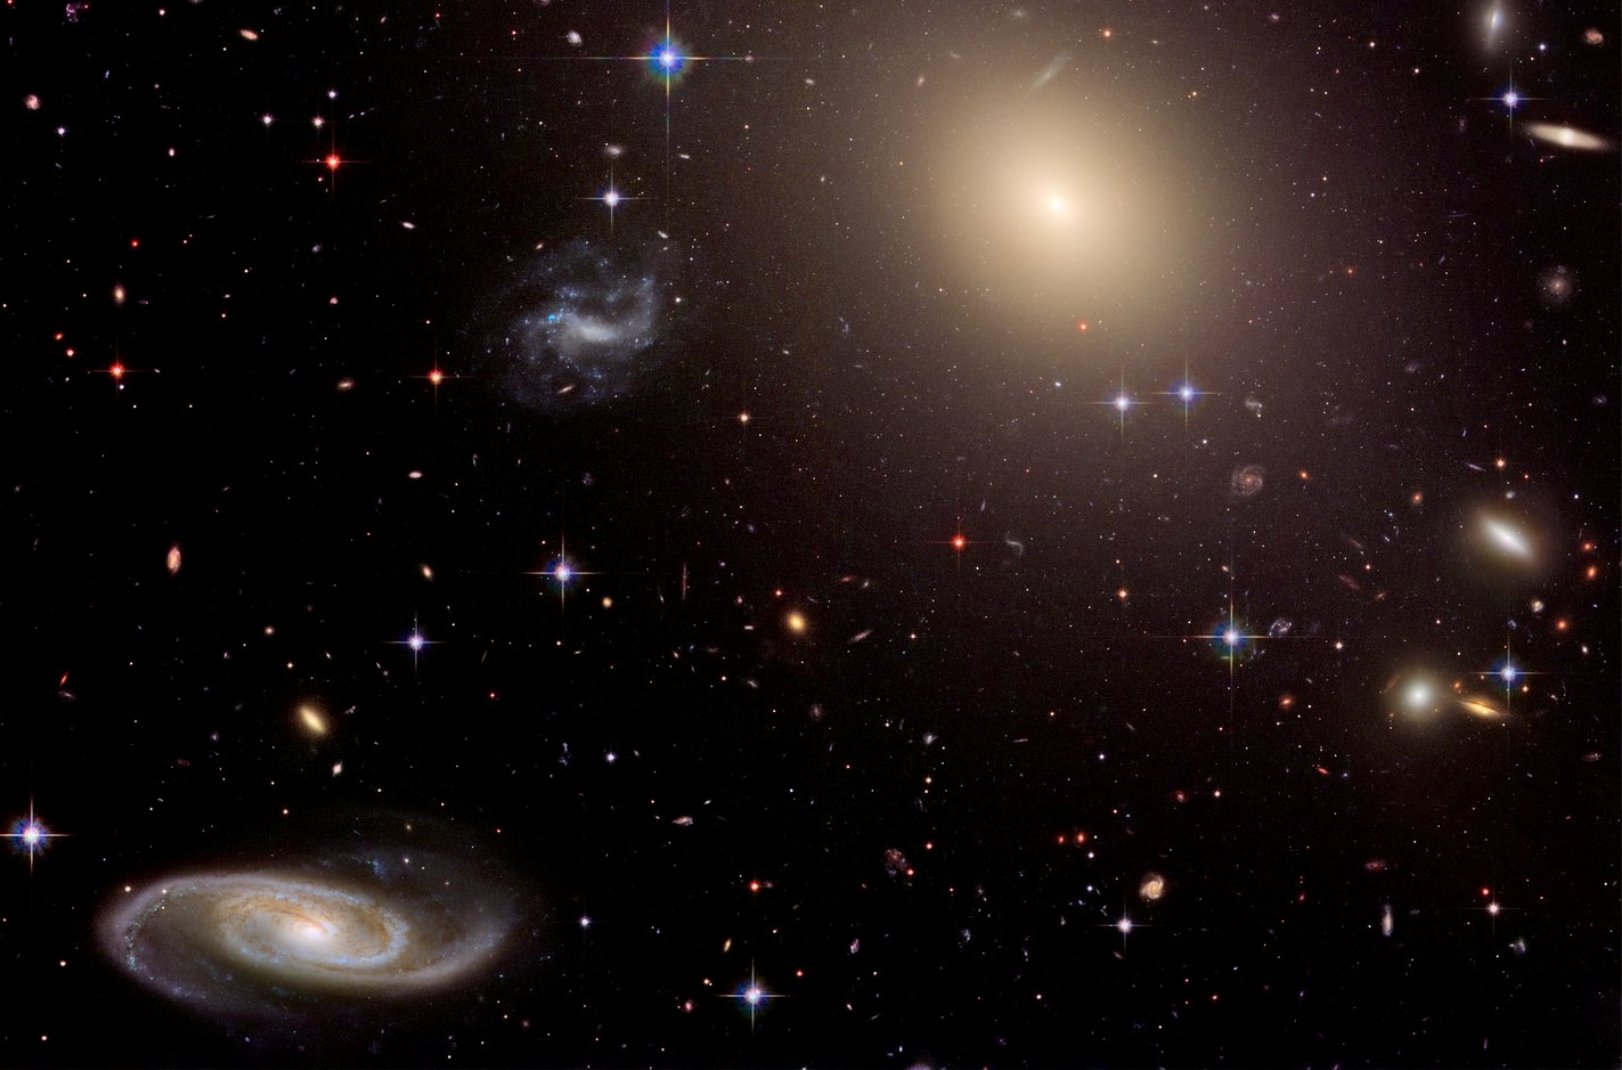 Une collection de galaxies au sein de l’amas Abell S0740, à plus de 450 millions d’années-lumière de la Terre, vue par Hubble. Occupant le centre de l’amas, la géante elliptique ESO 325-G004 est entourée de milliers d’amas globulaires, chacun composé de centaines de milliers d’étoiles liées entre elles par la gravité. Cette image a été construite avec des observations de 2005 et de 2006. © Nasa, ESA, and The Hubble Heritage Team (STScI/AURA)